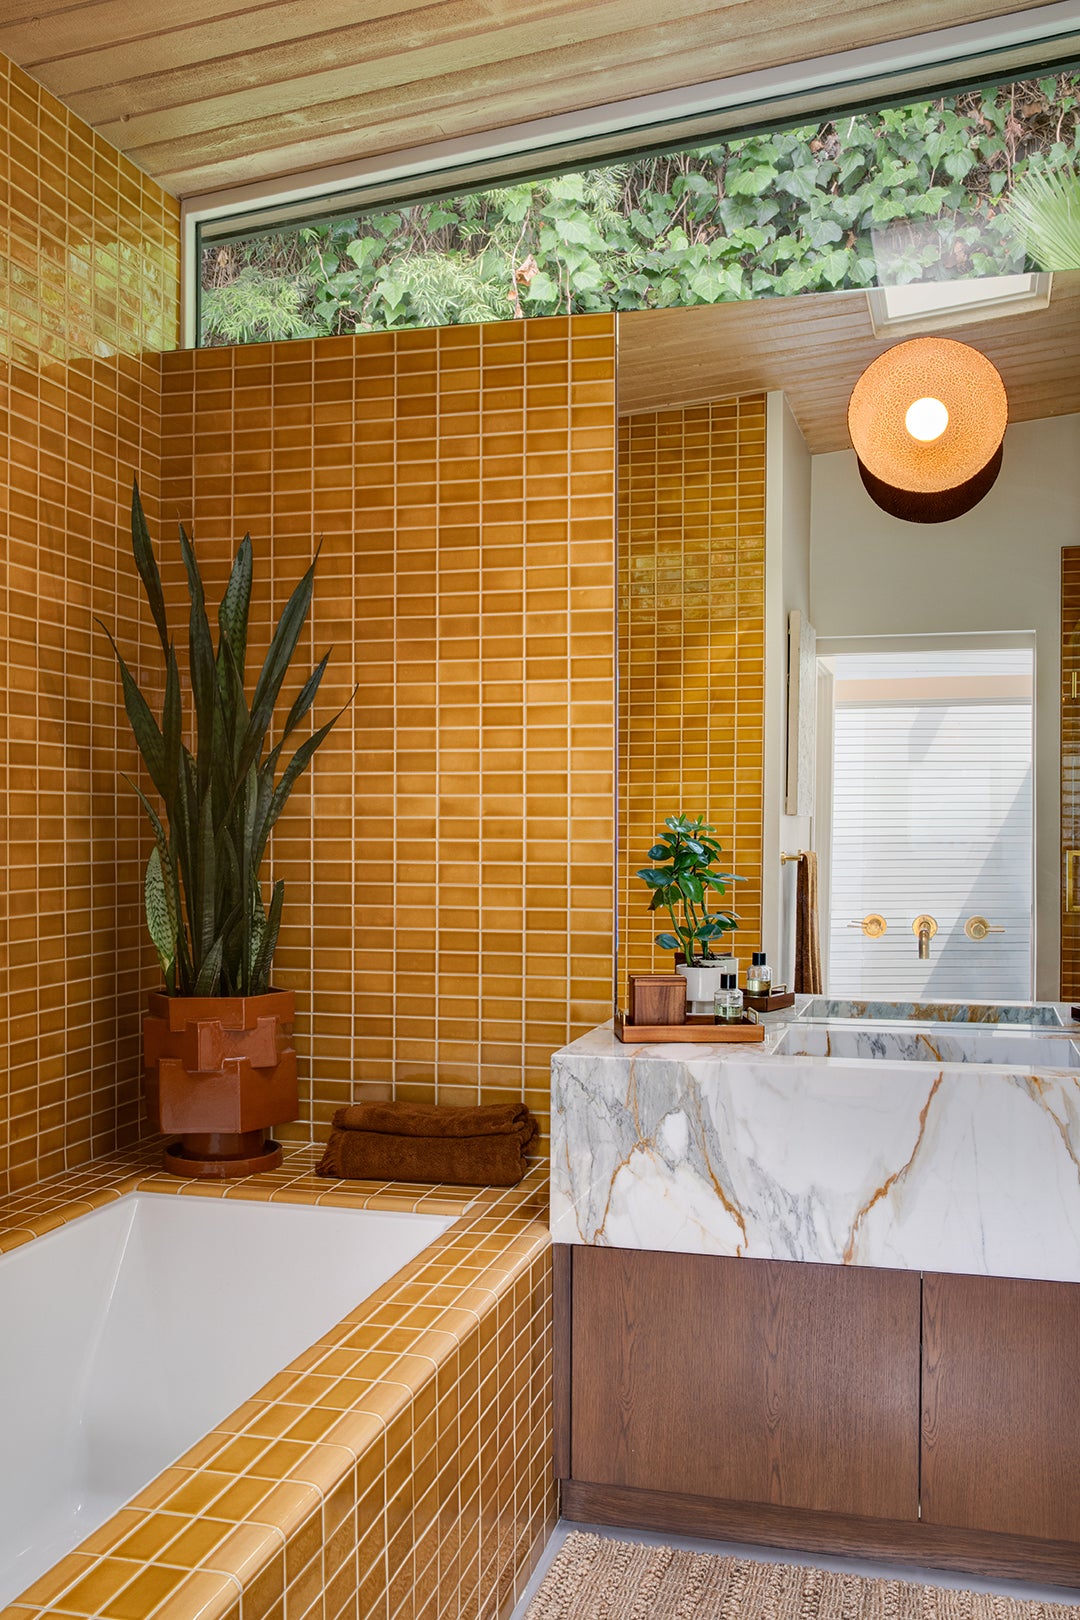 yellow tile around tub